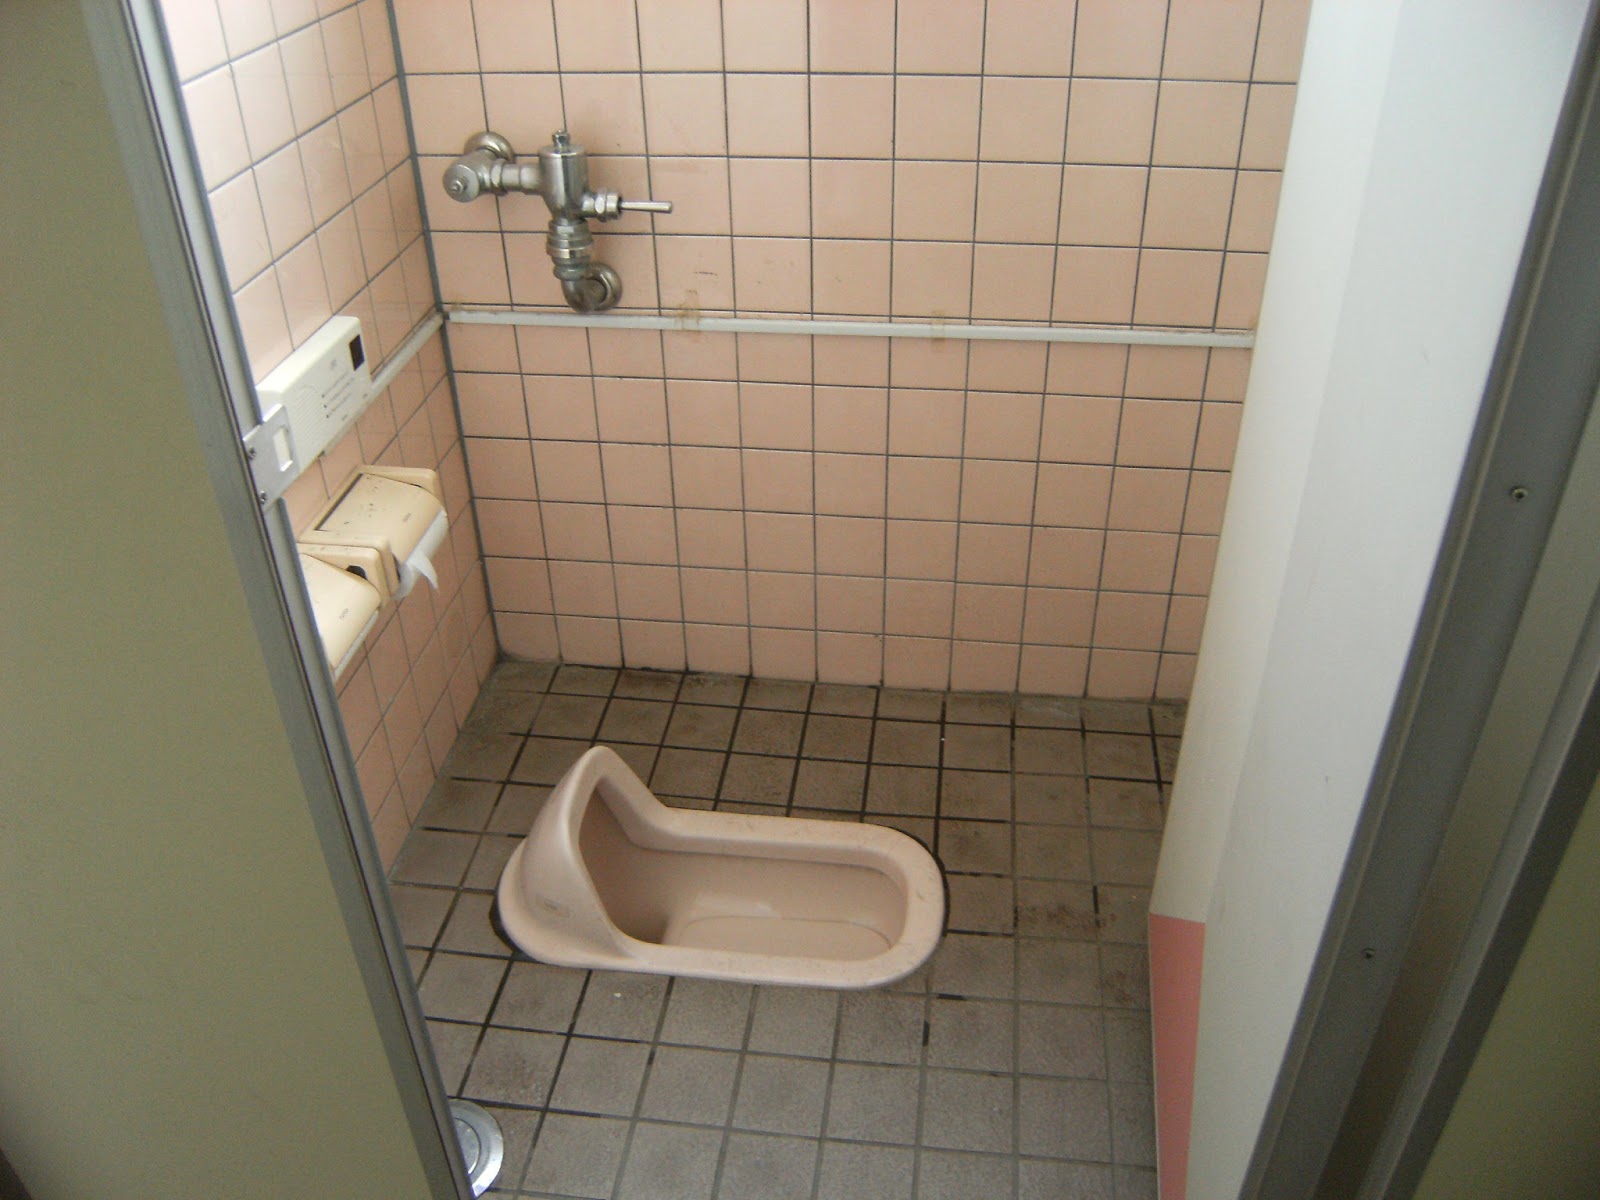 Δημόσιες τουαλέτες ανά τον κόσμο